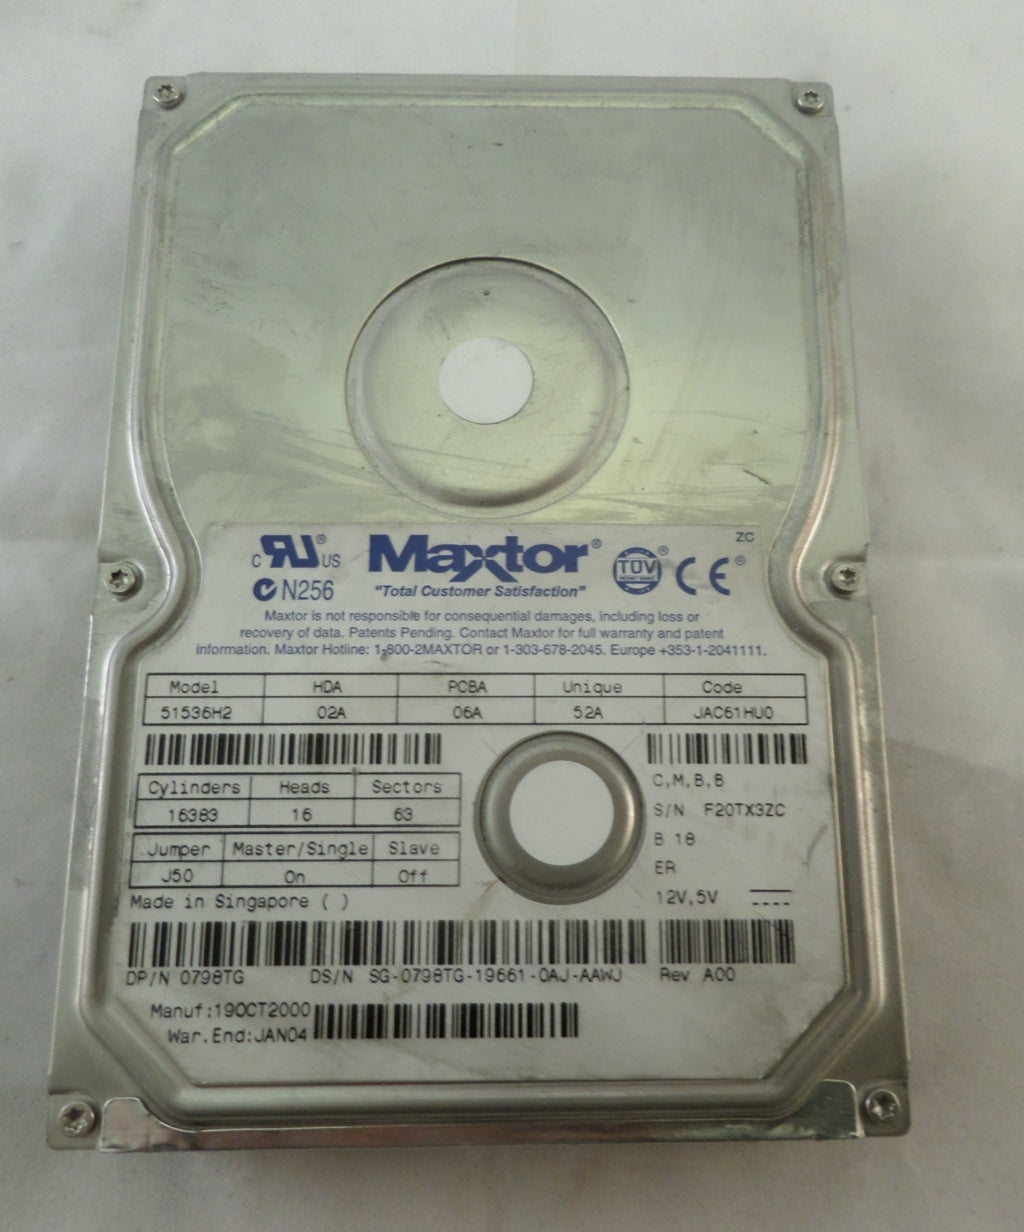 MC1642_51536H2_Dell Maxtor 15Gb IDE 7200rpm 3.5in HDD - Image4